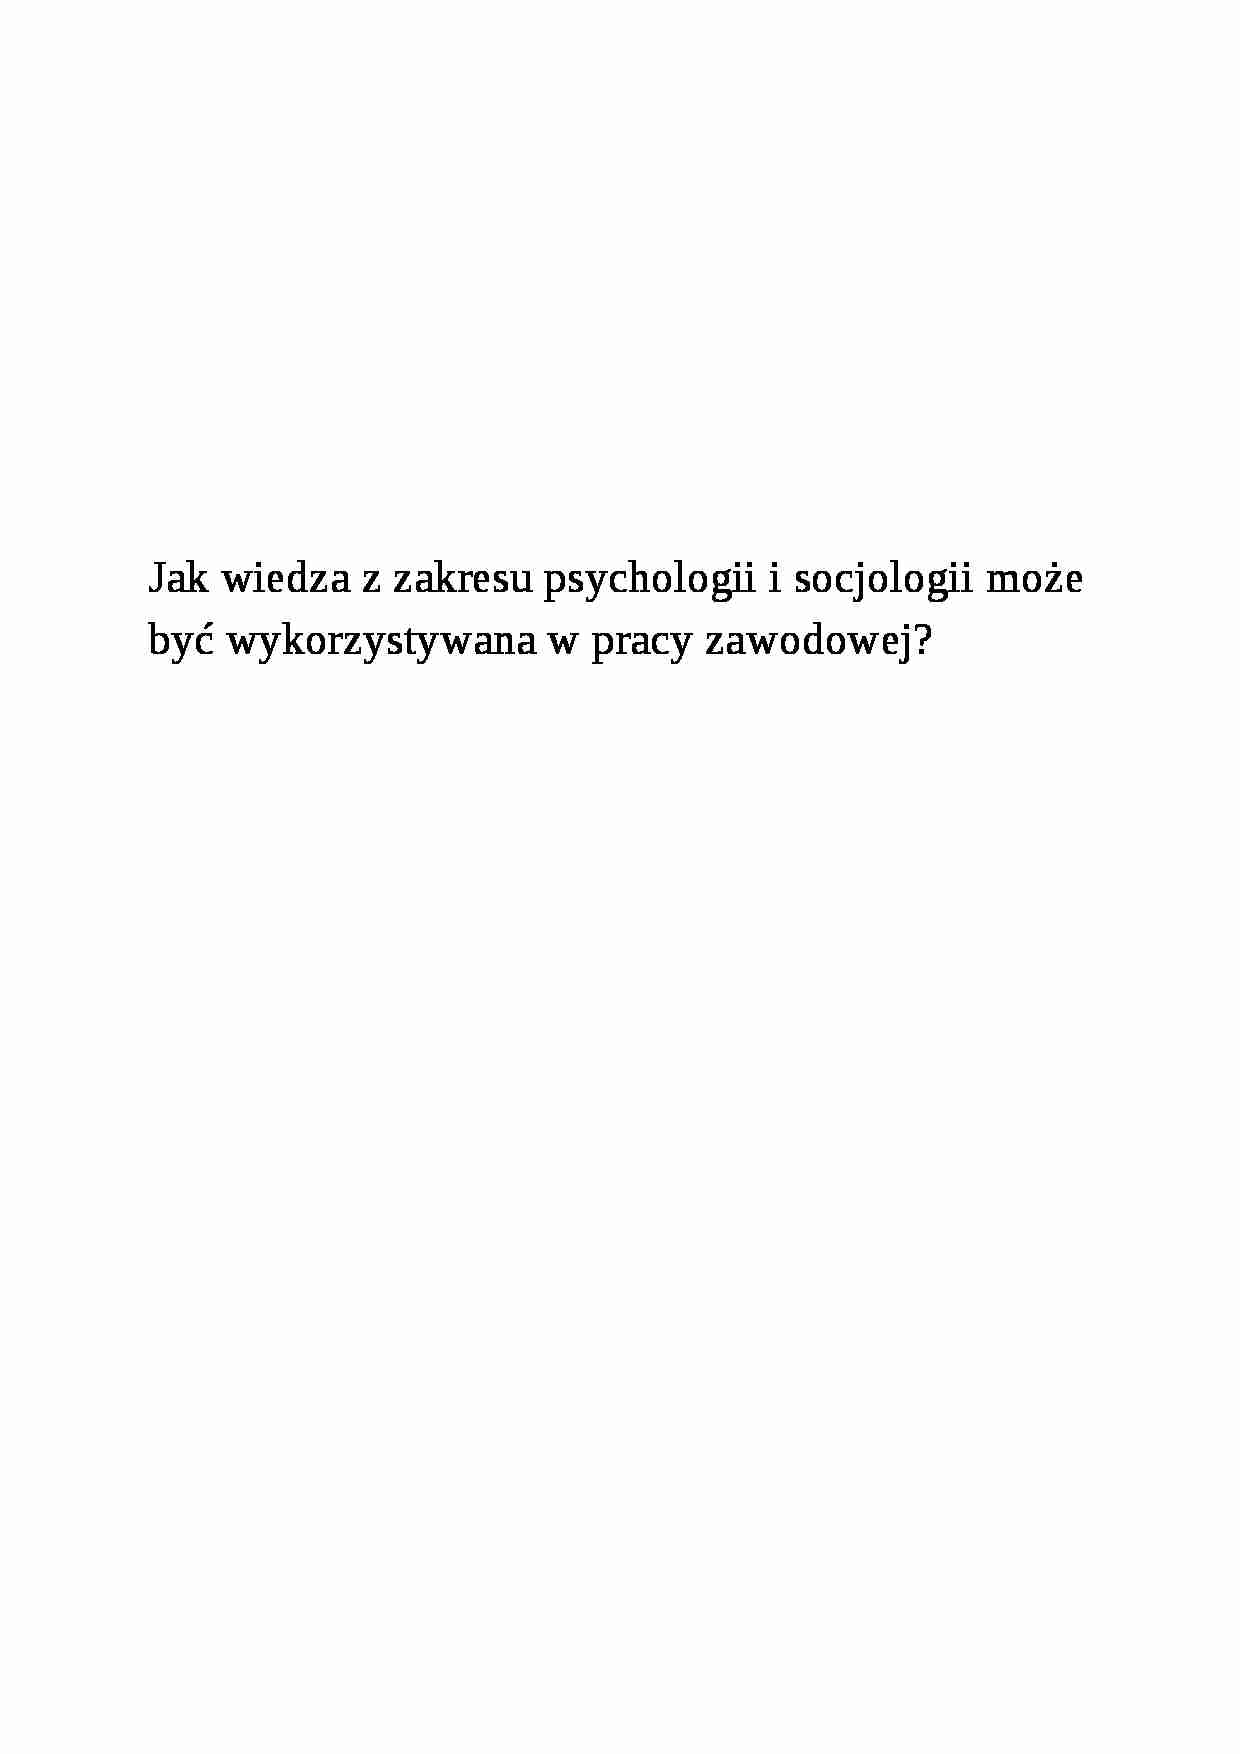 Psychologia i socjologia w pracy zawodowej - strona 1